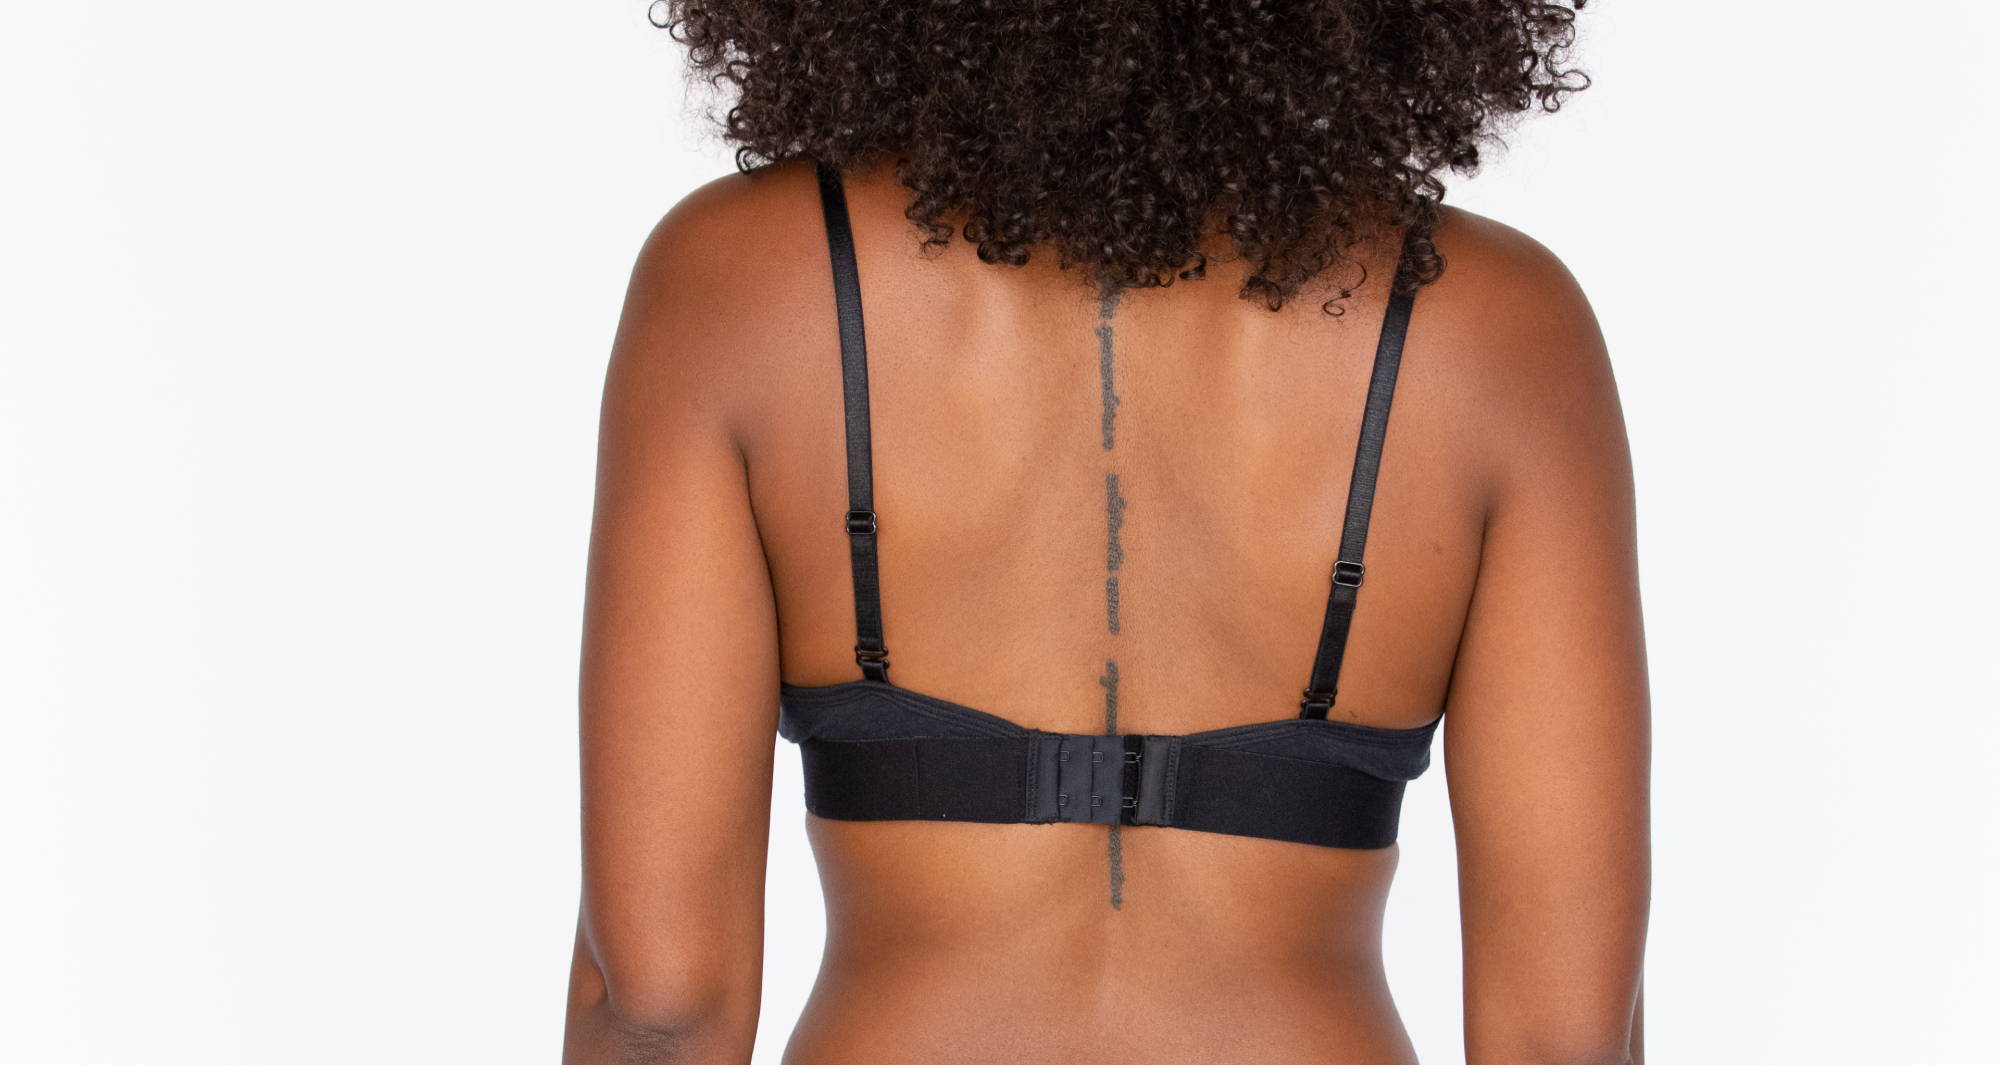 Why Does My Bra Hurt My Ribs? – WAMA Underwear